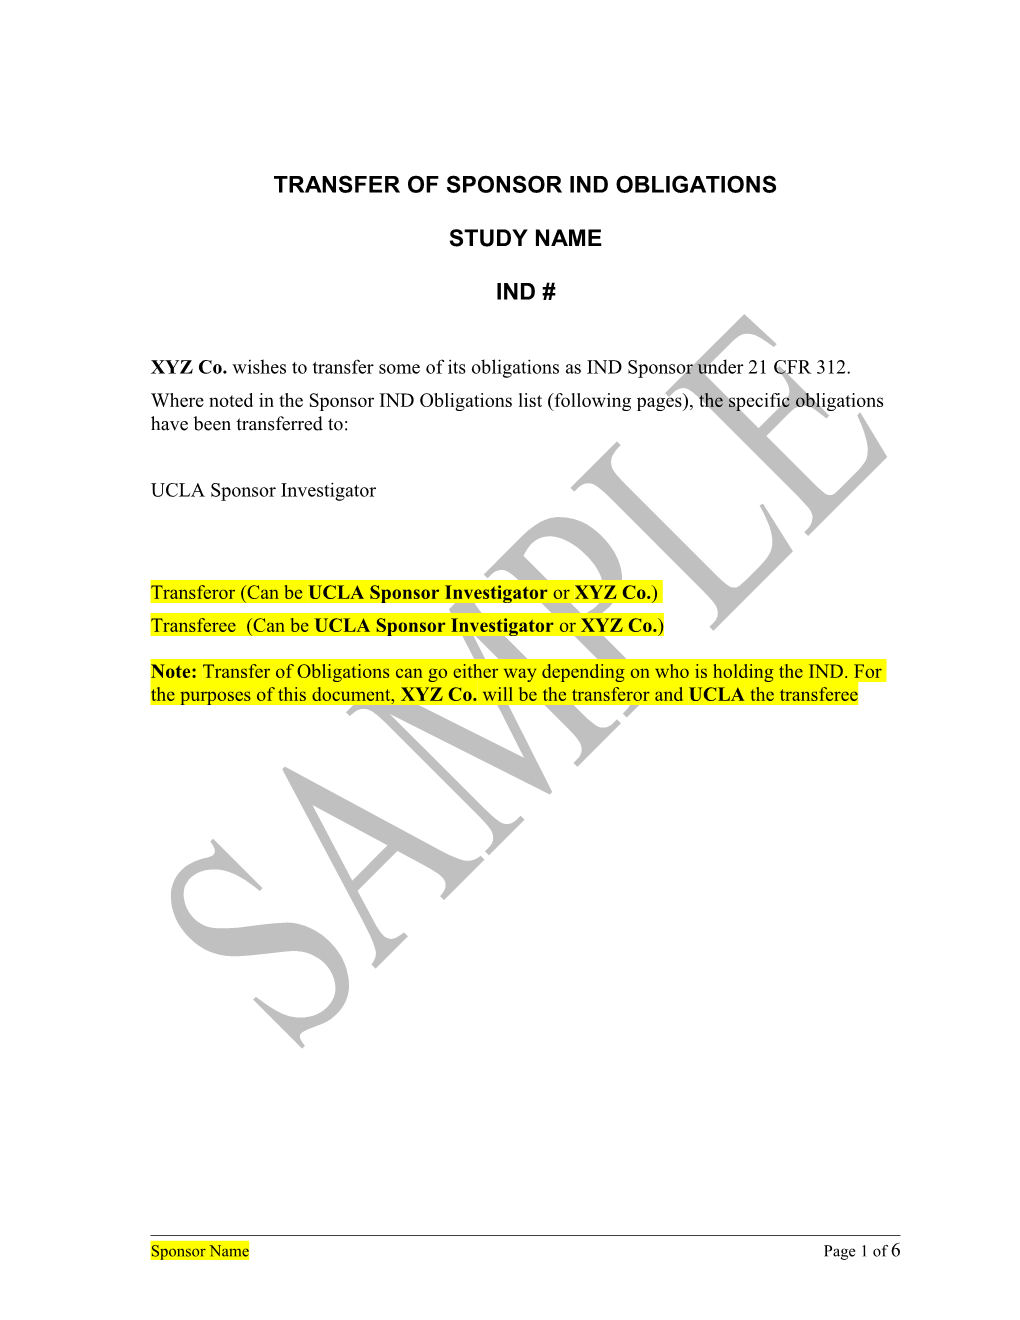 Transfer of Sponsor Ind Obligations